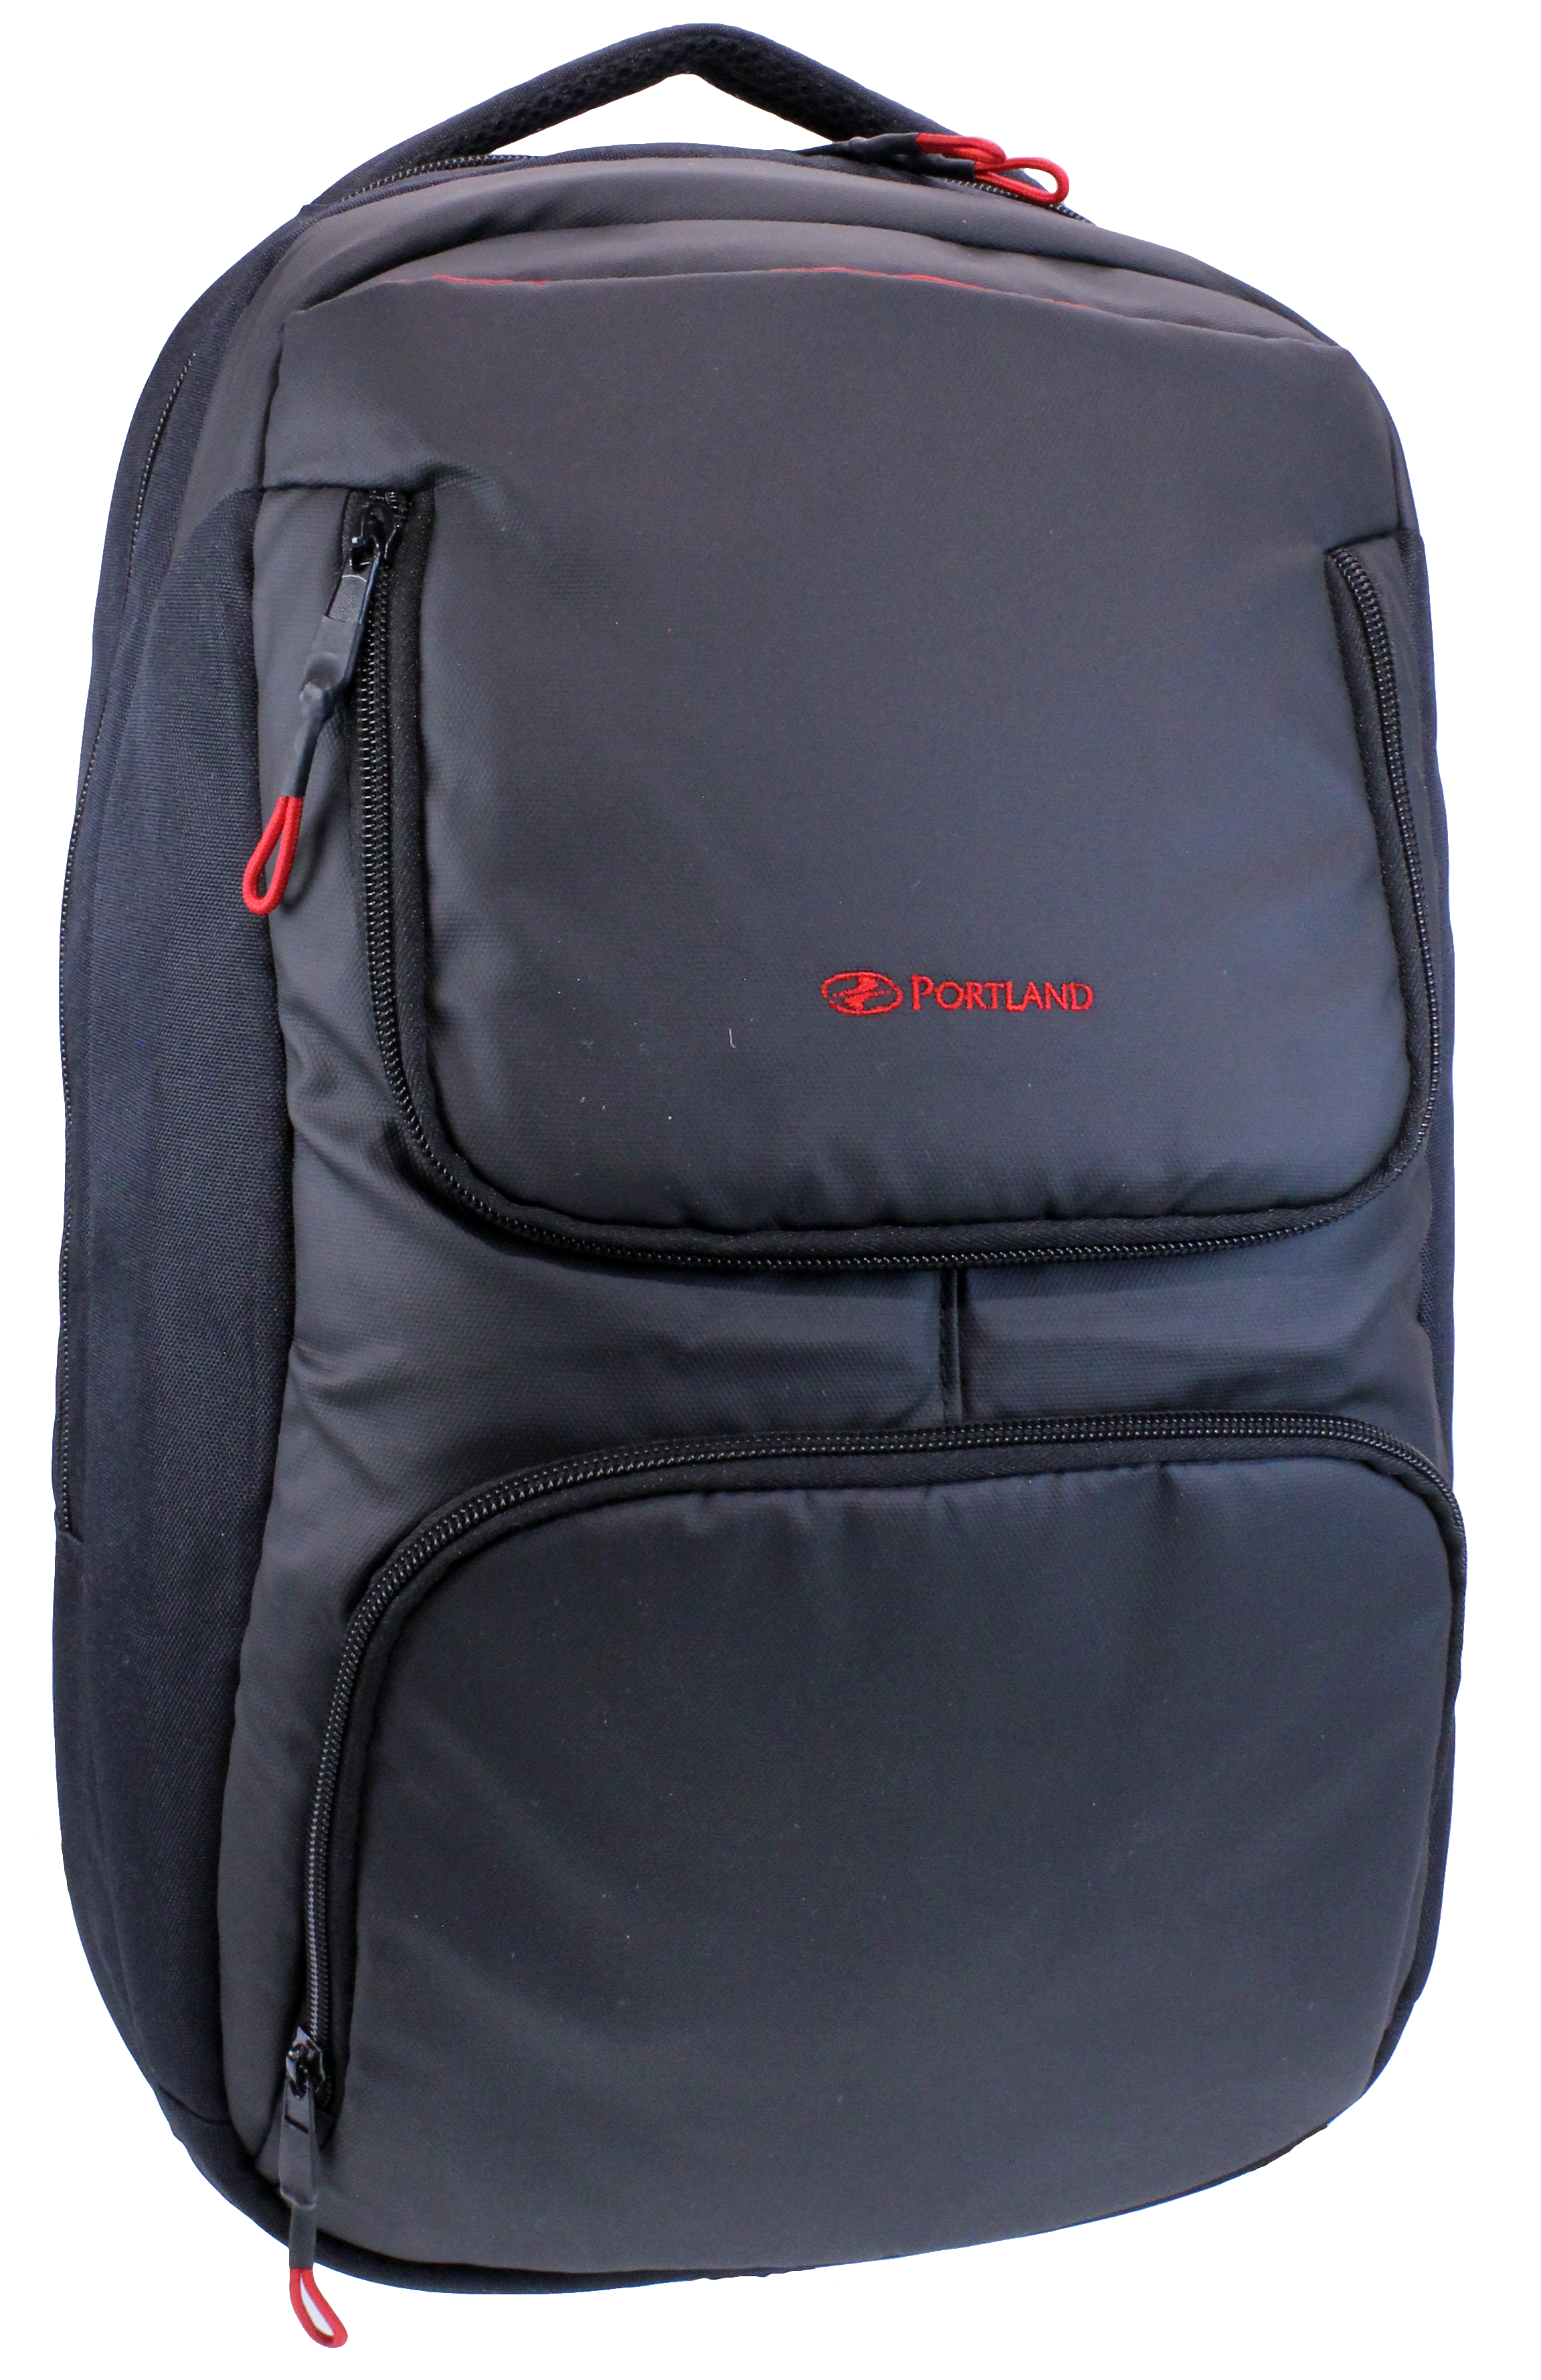 Portland Laptop Backpack Black